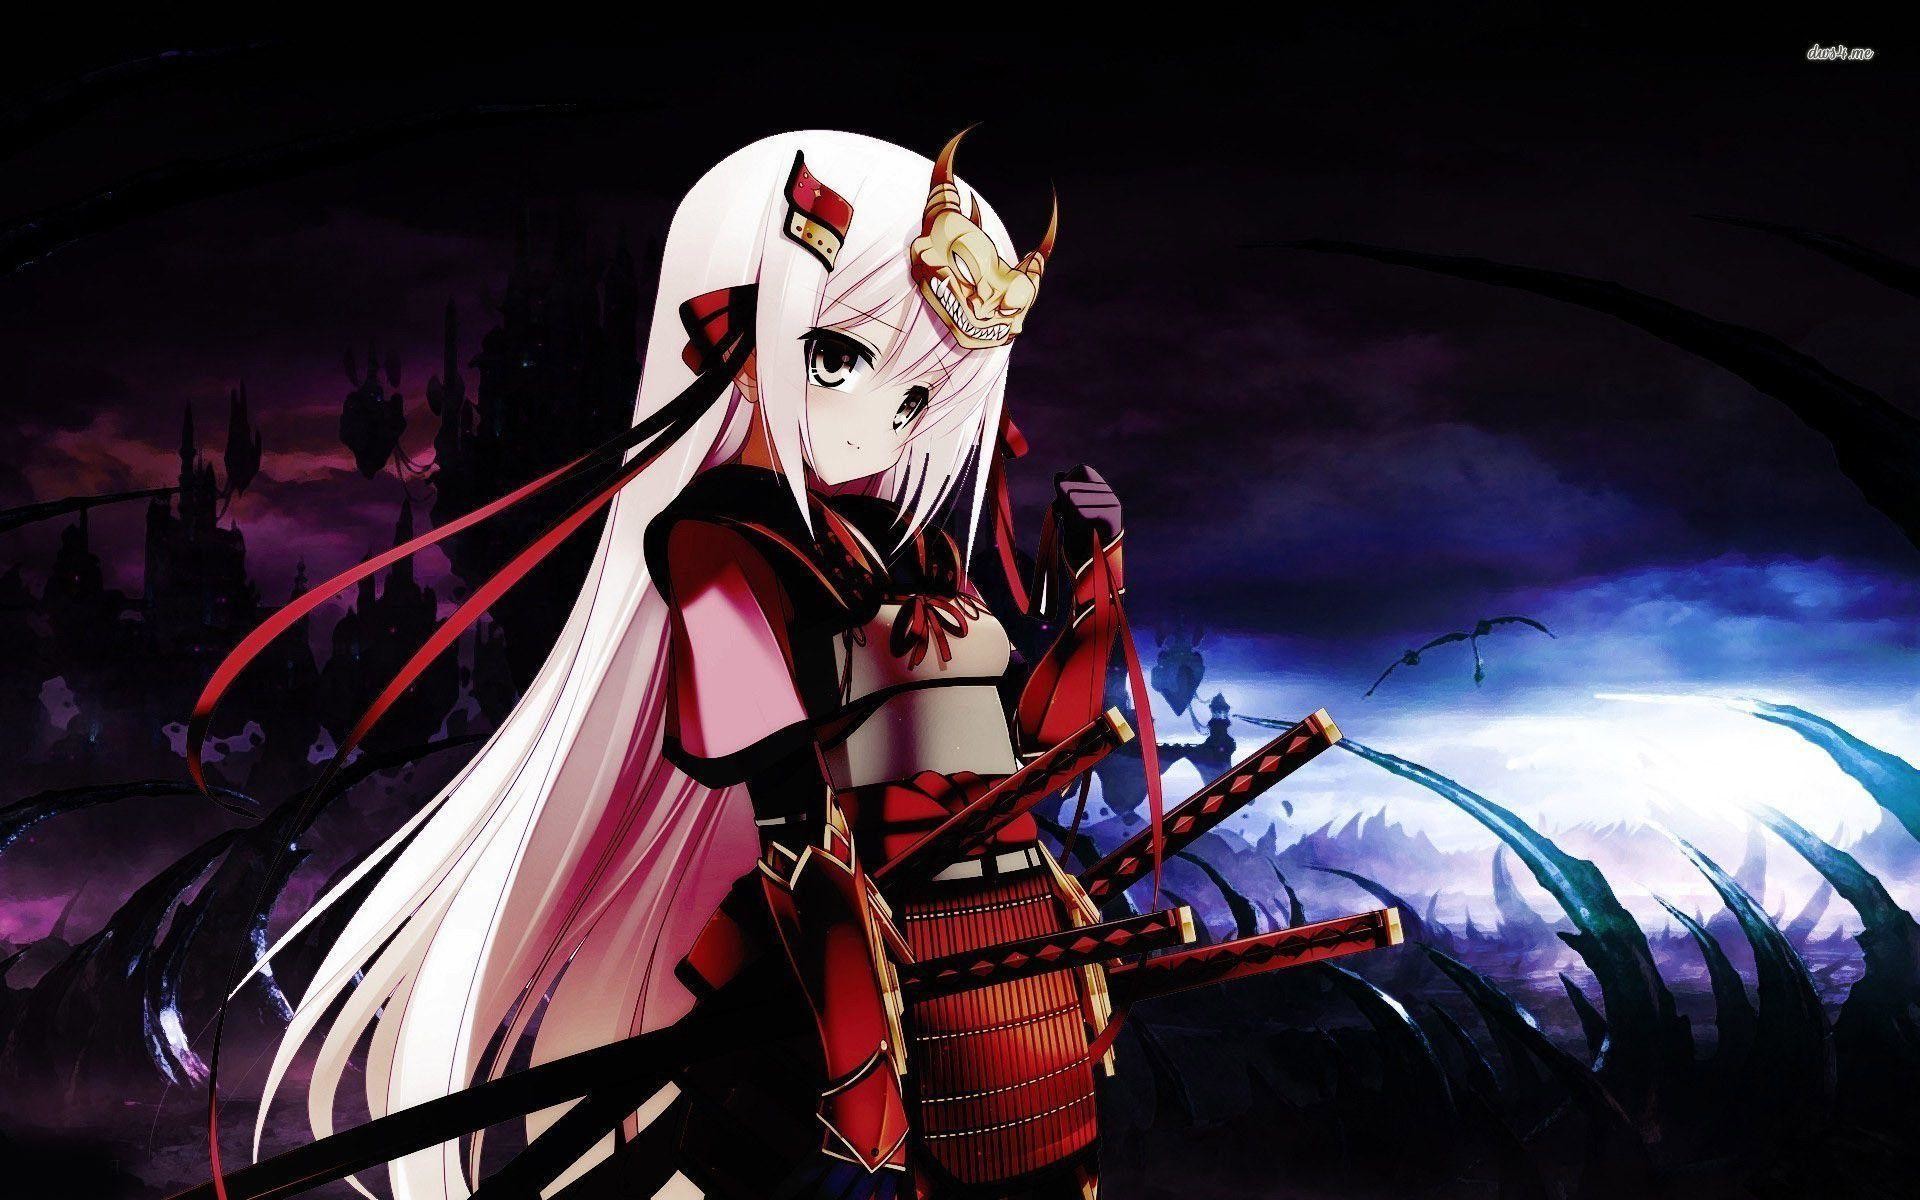 Samurai girl wallpaper – Anime wallpapers – #